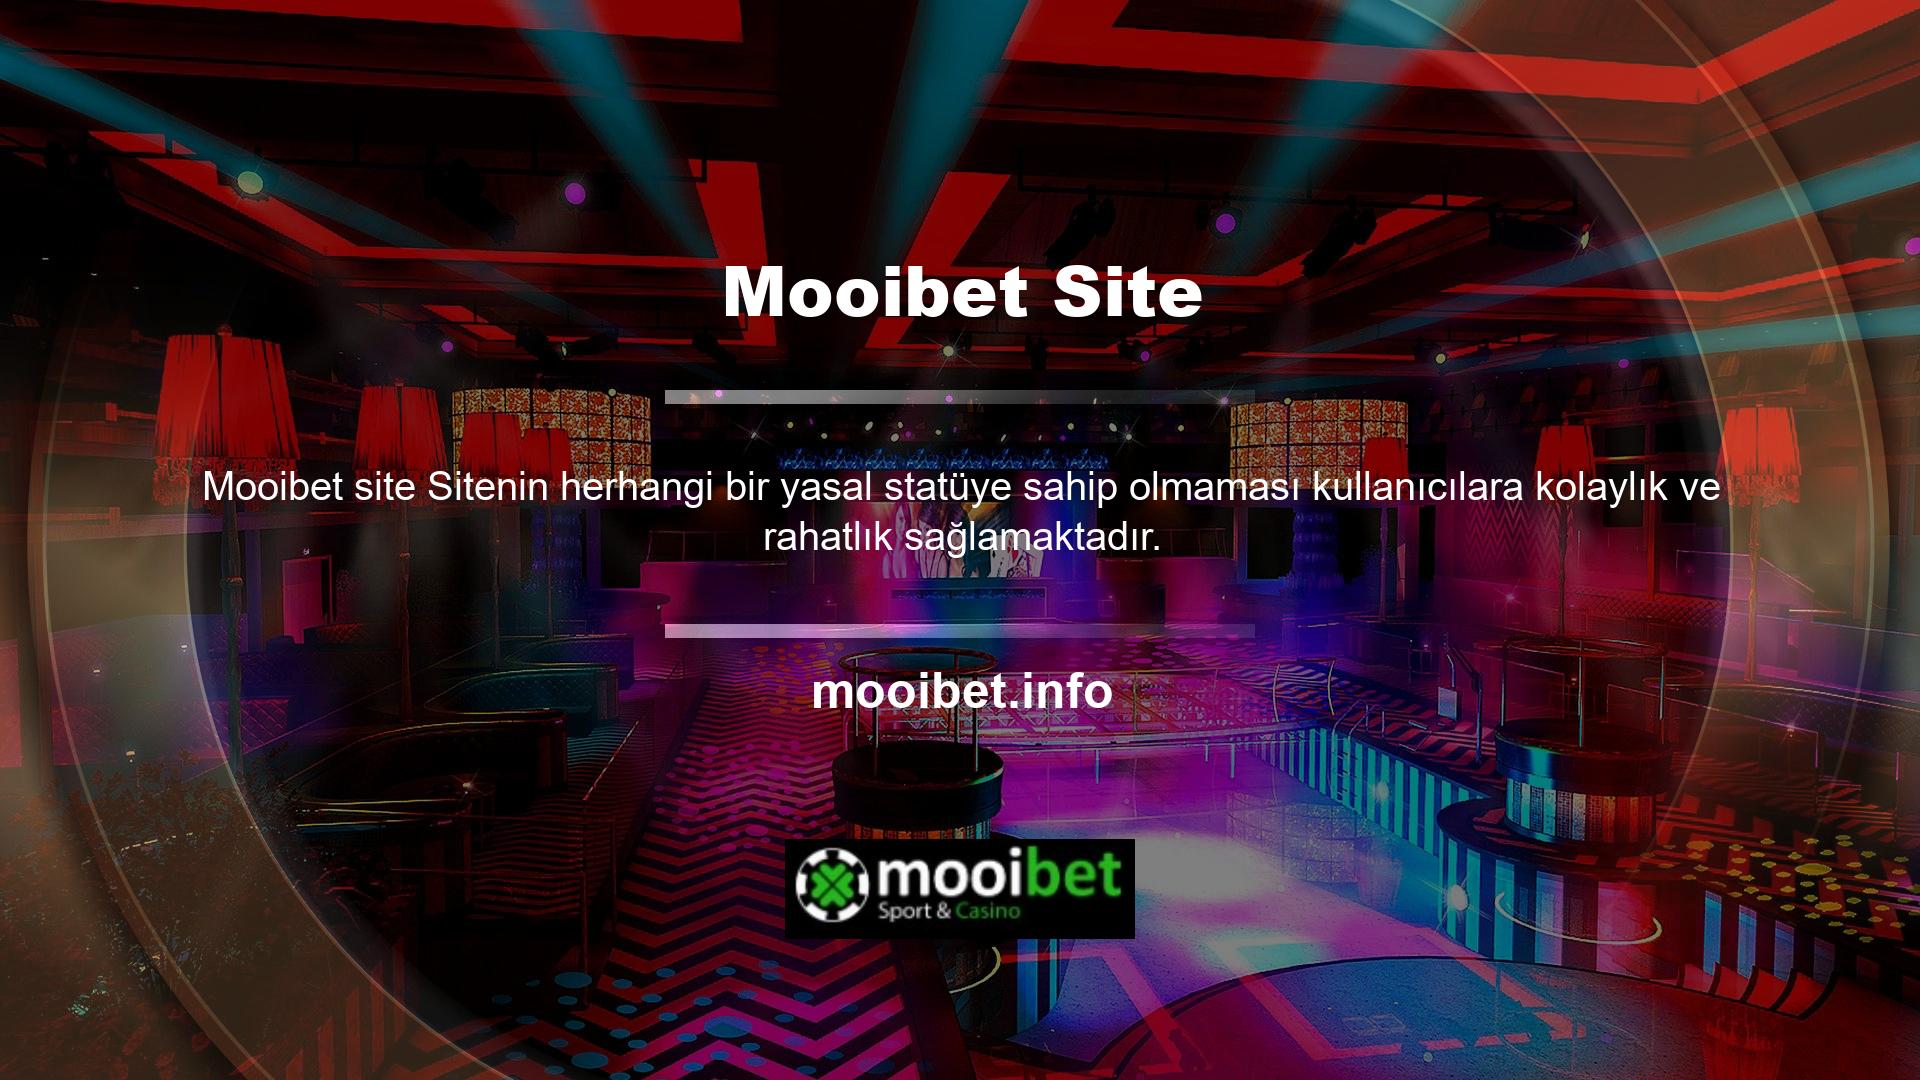 Mooibet site